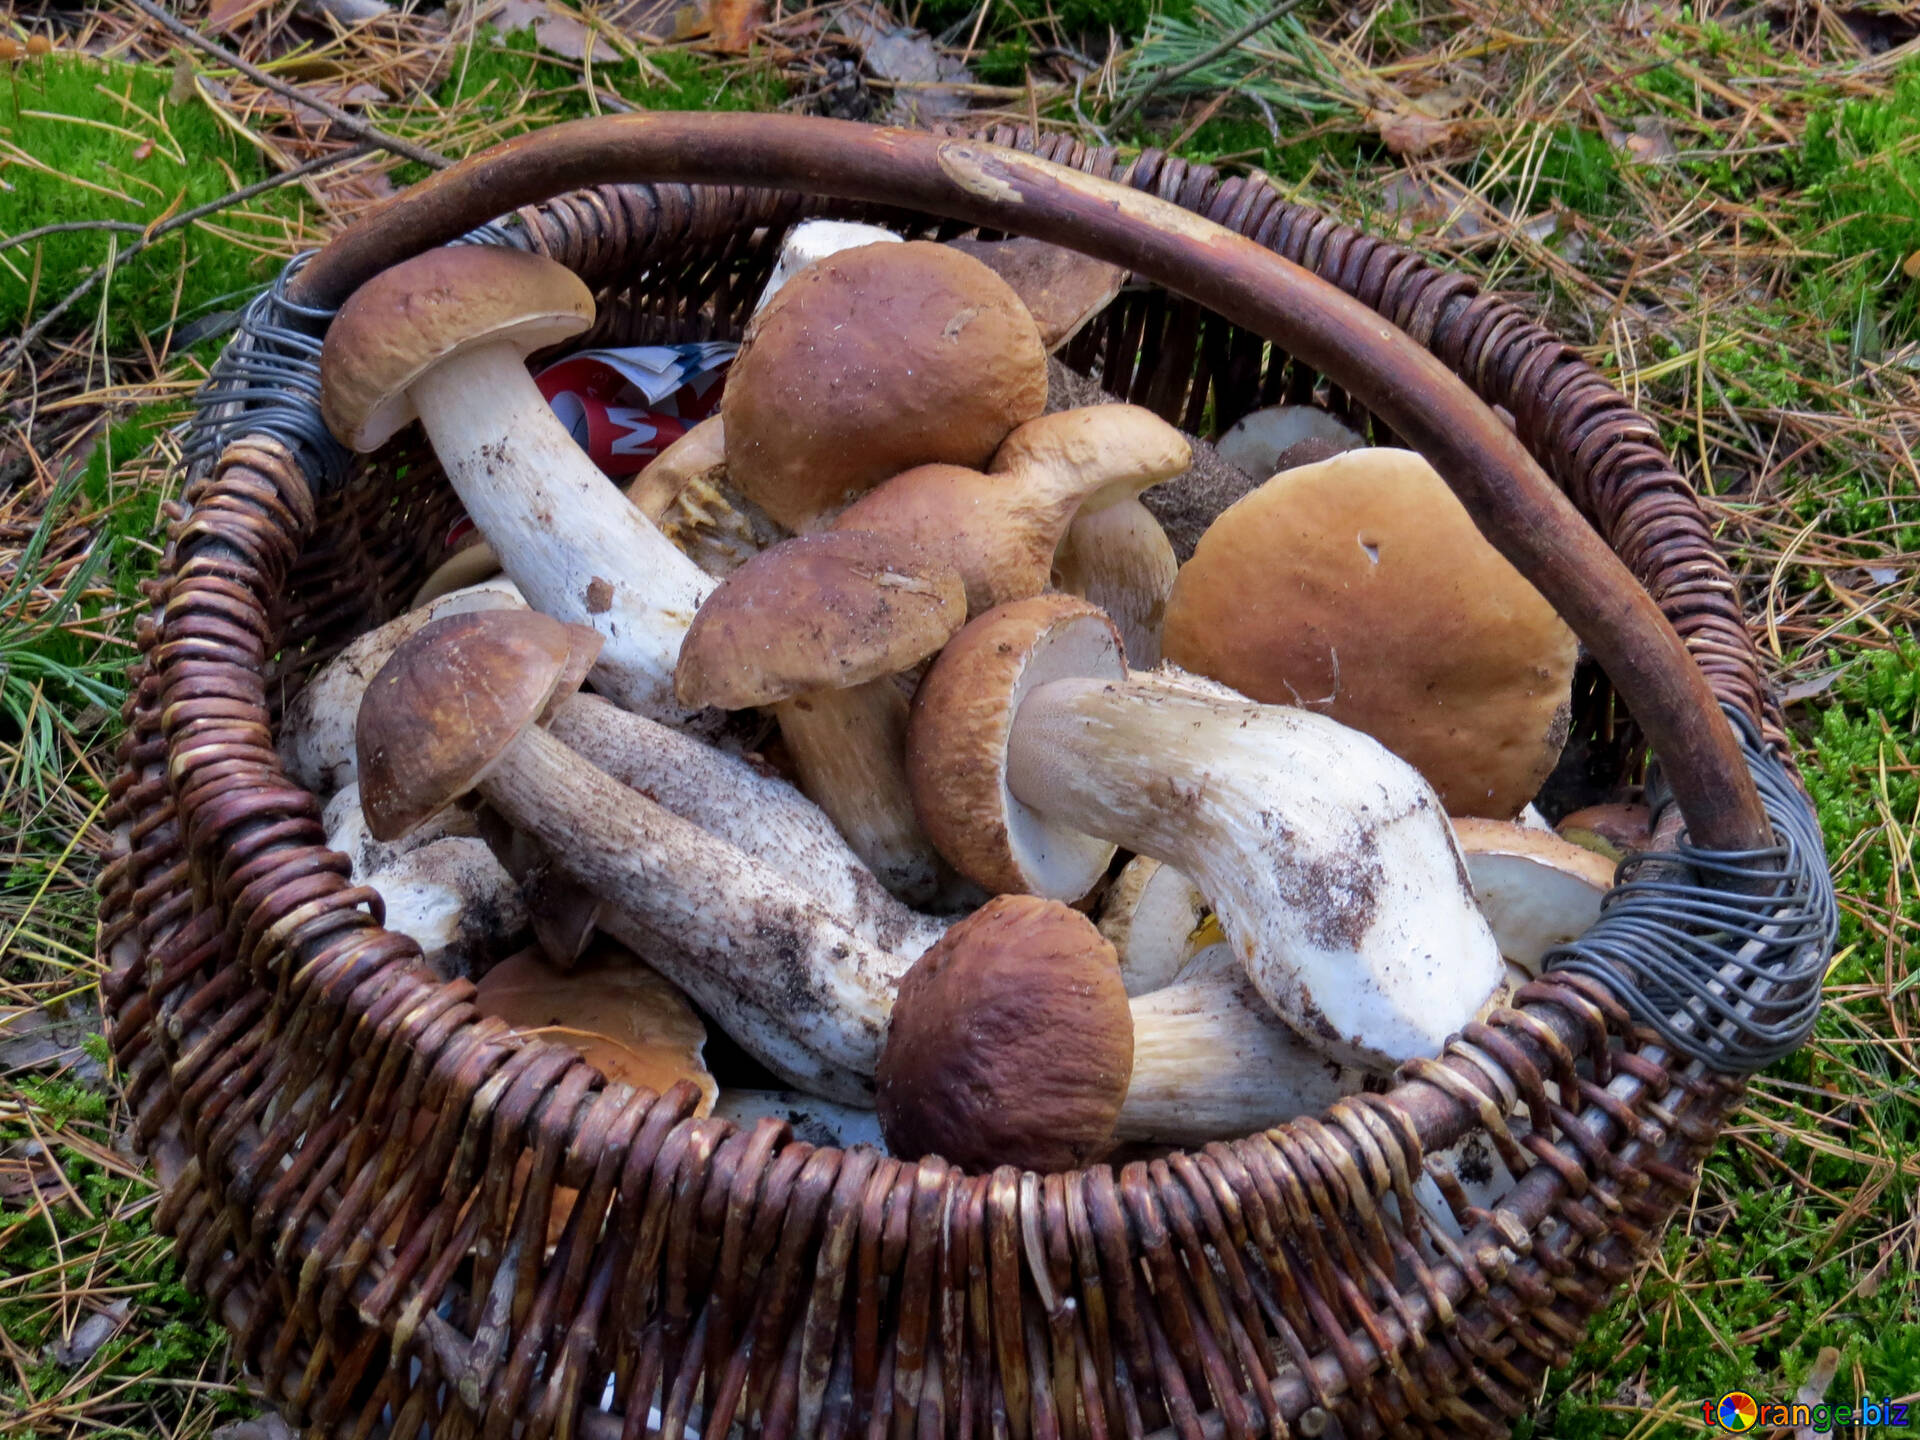 Сколько держат грибы. Сбор грибов Боровиков в лесу. Корзина с грибами. Белые грибы в корзинке. Собранные грибы.